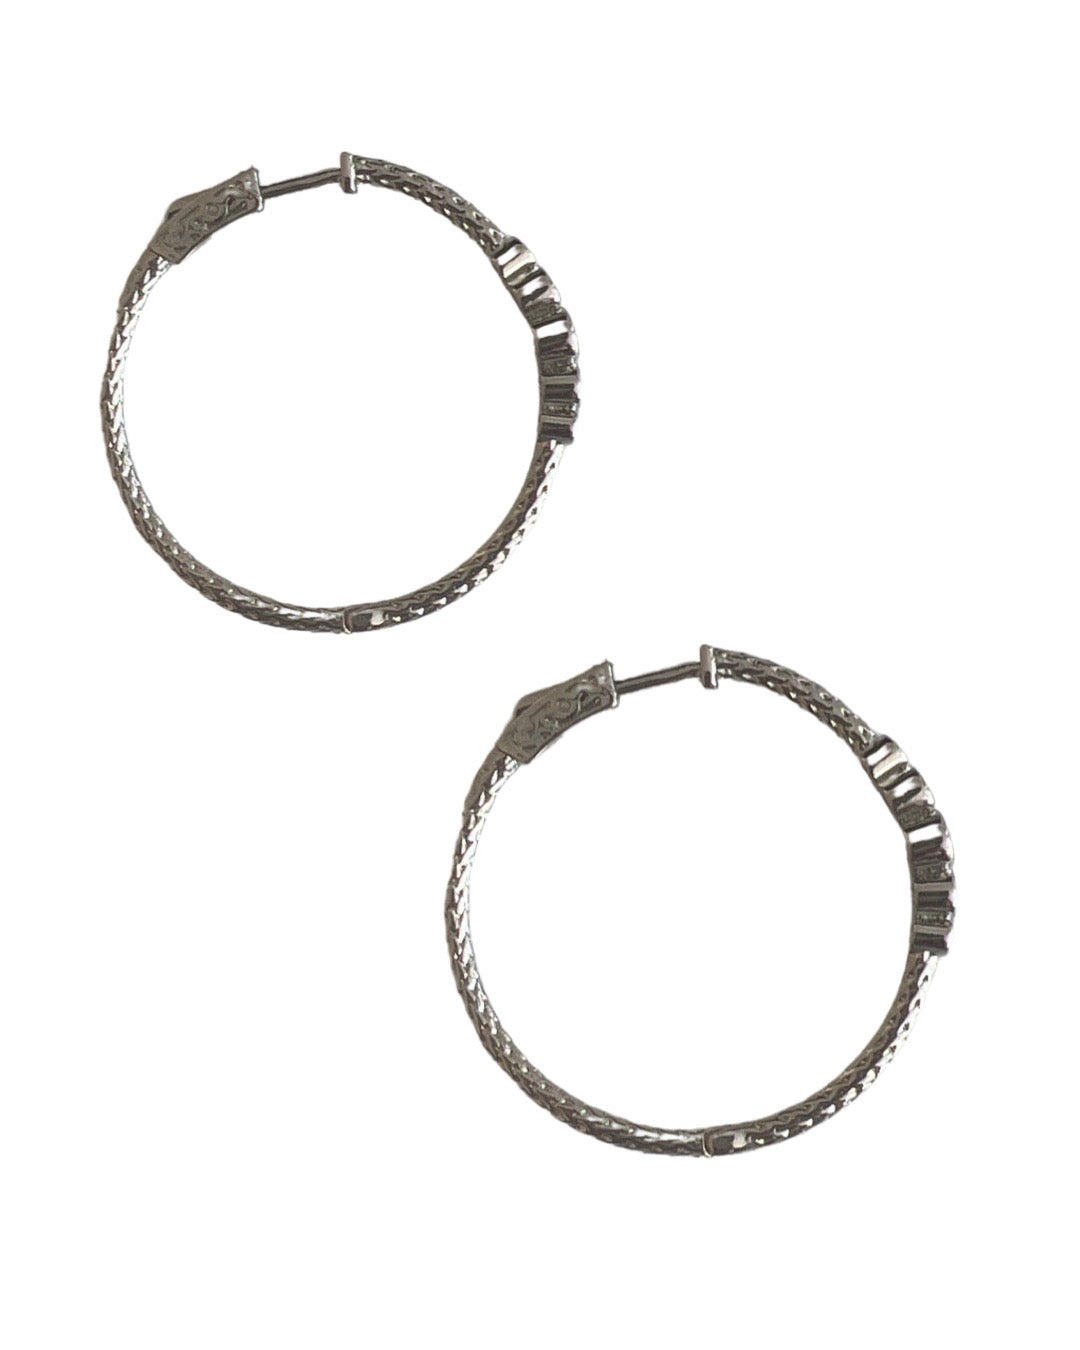 5 Stone Hoop Earrings